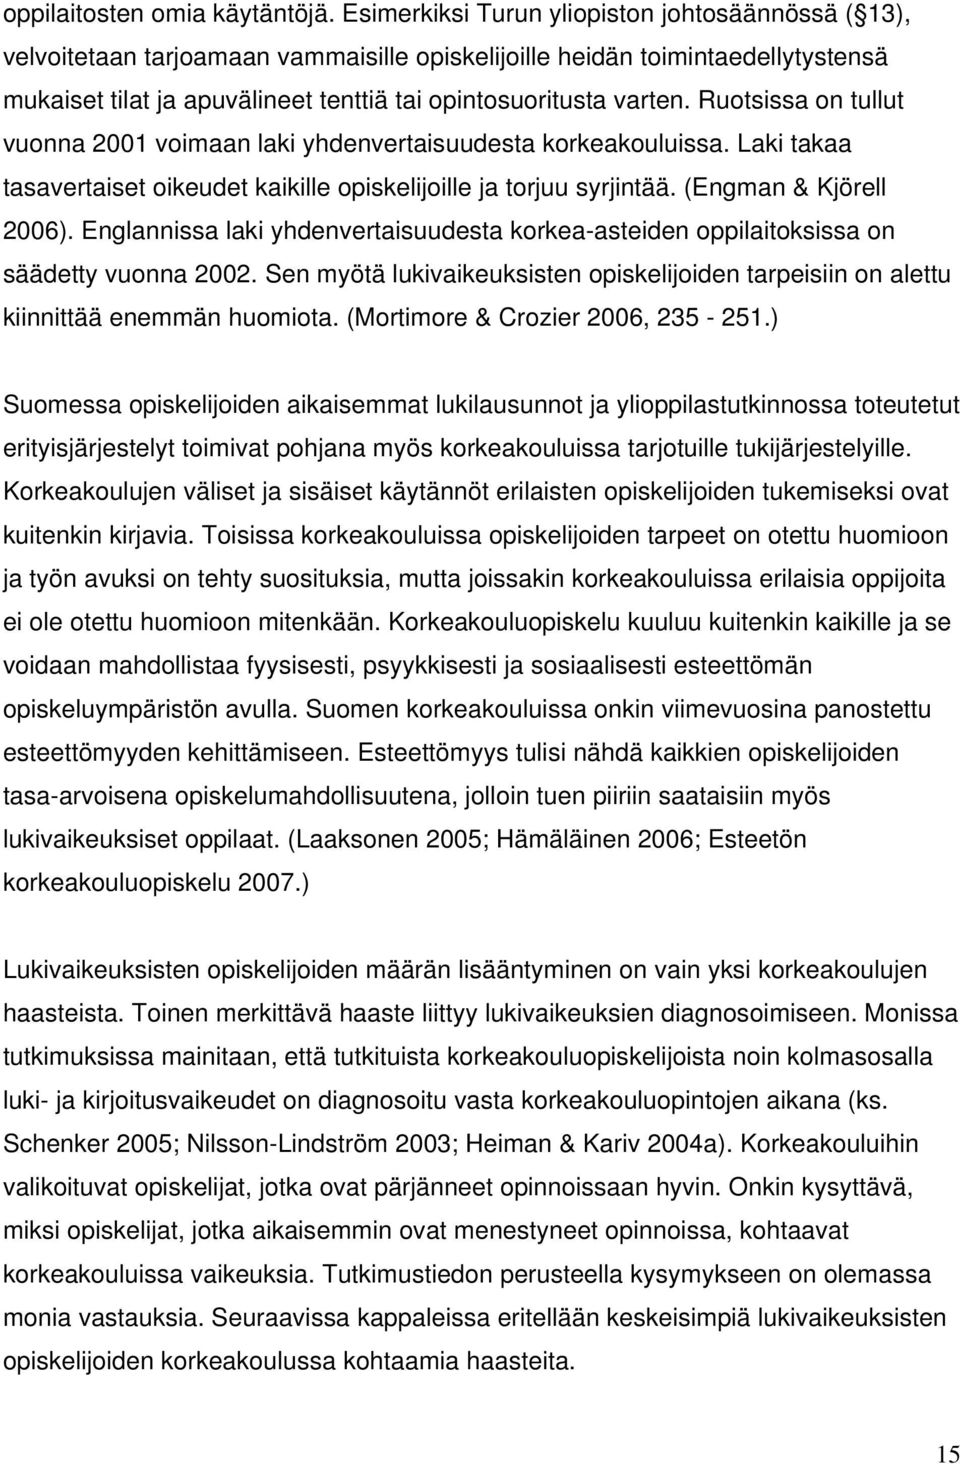 Ruotsissa on tullut vuonna 2001 voimaan laki yhdenvertaisuudesta korkeakouluissa. Laki takaa tasavertaiset oikeudet kaikille opiskelijoille ja torjuu syrjintää. (Engman & Kjörell 2006).